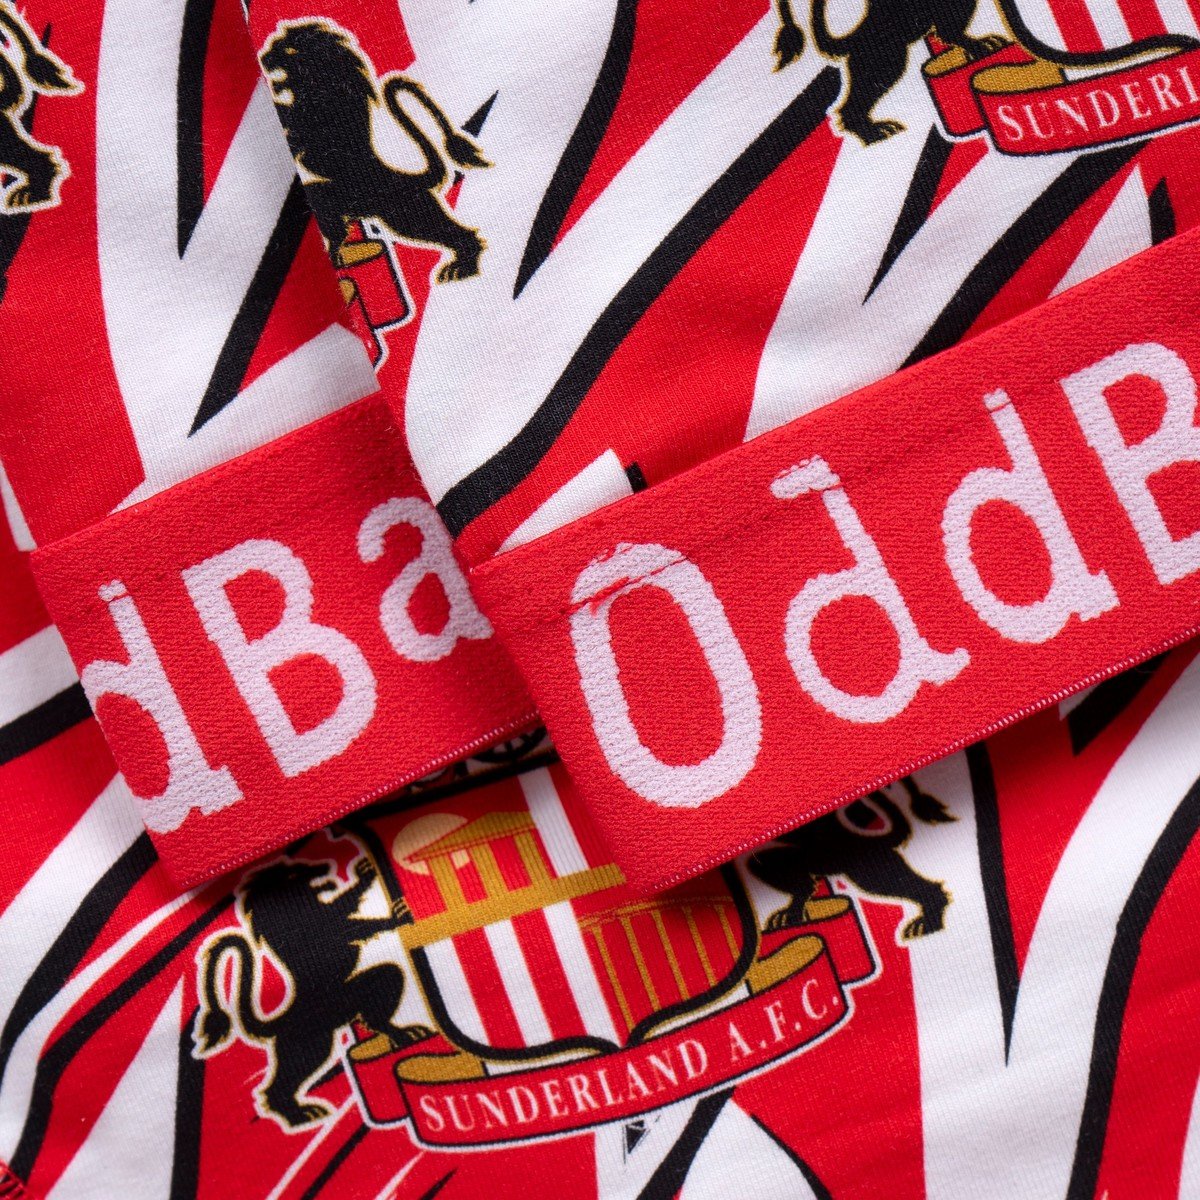 Buy the OddBalls Zebra Bralette online at Sunderland AFC Store